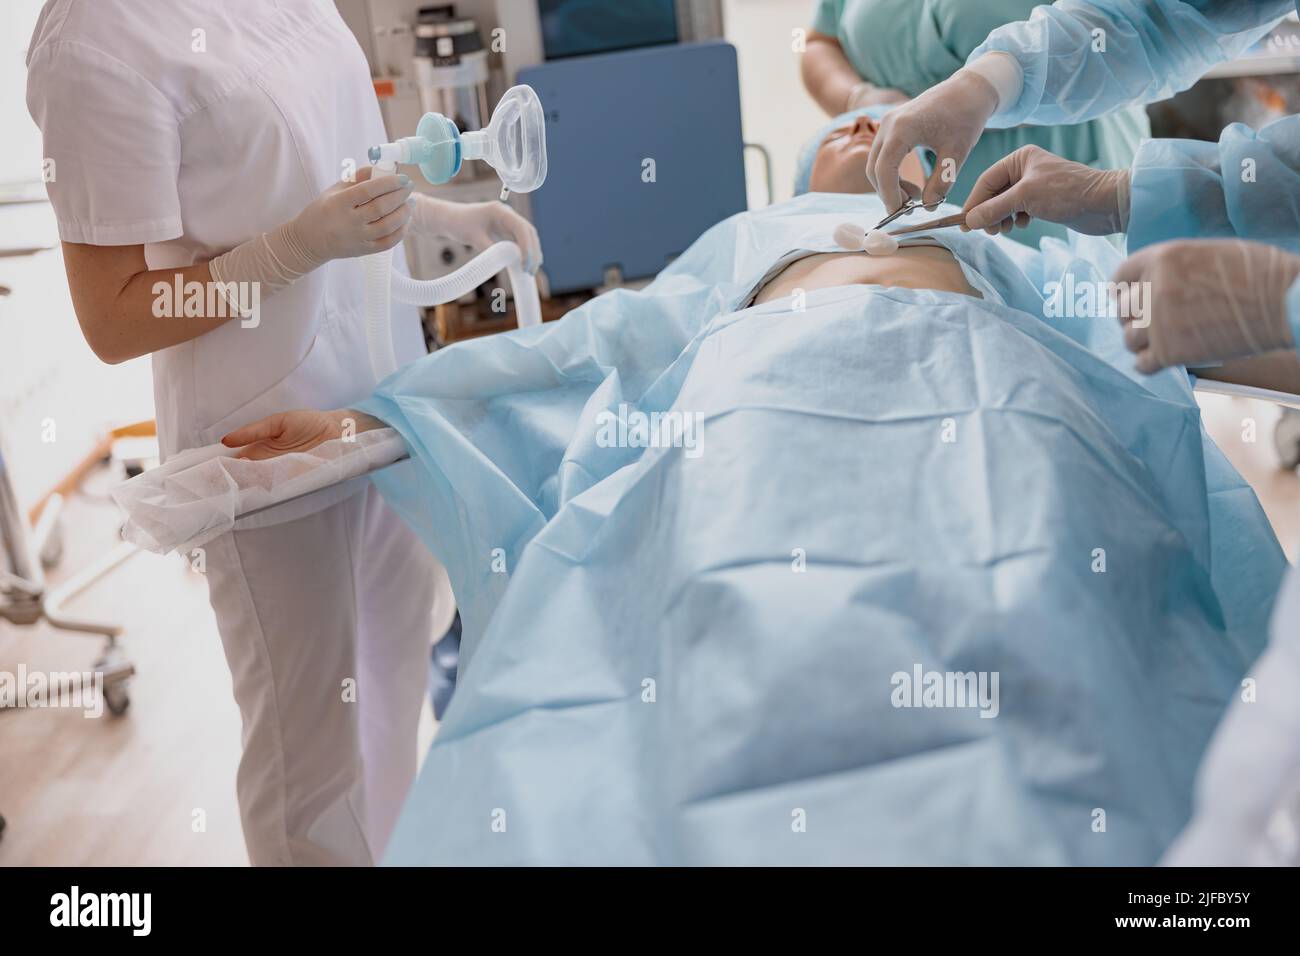 Primo piano di infermiere e medico preparare la pelle del paziente per l'intervento chirurgico utilizzando soluzione antisettica Foto Stock